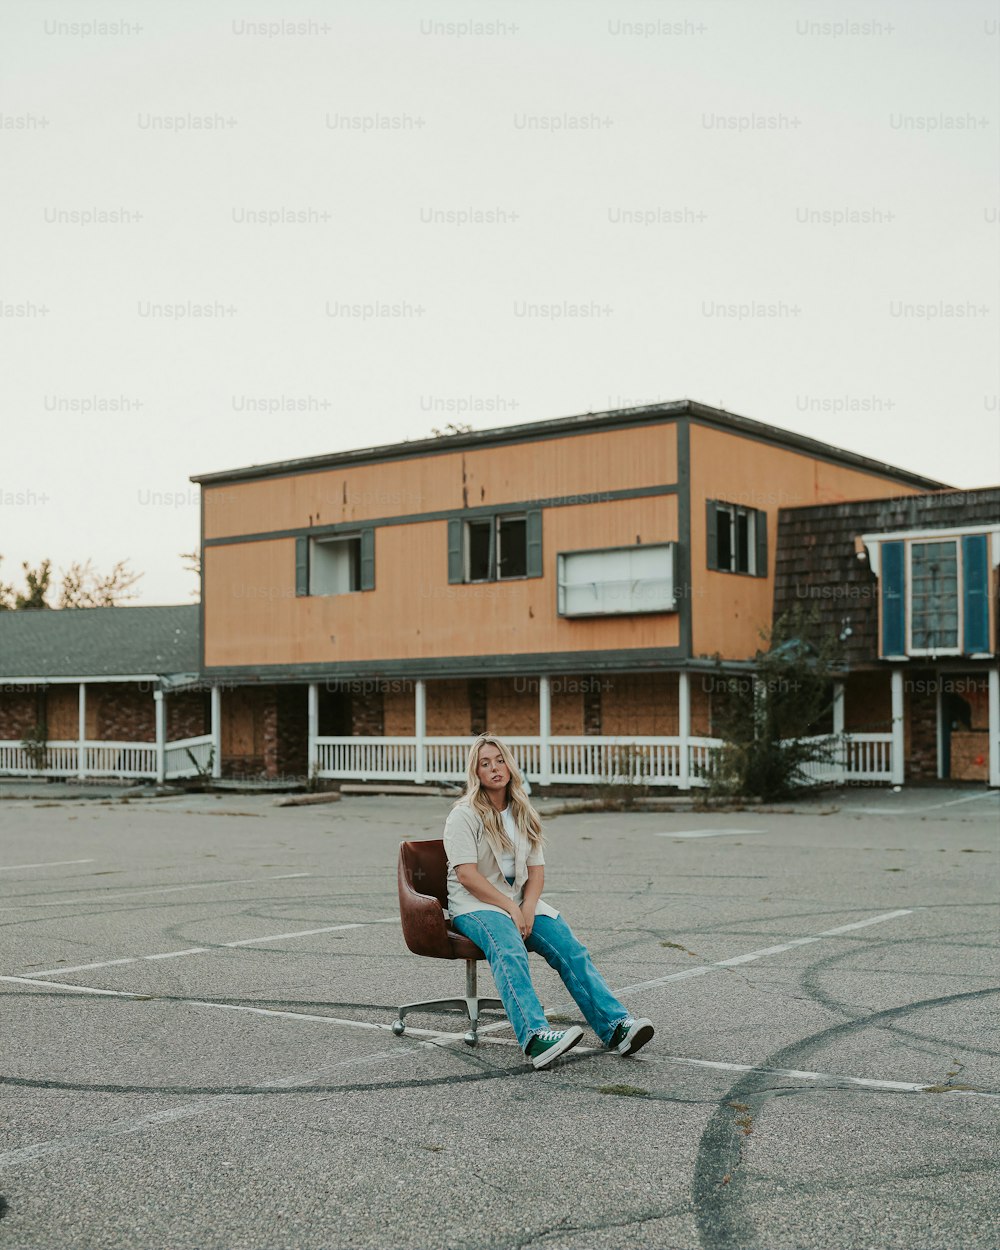 Una mujer sentada en una silla en un estacionamiento